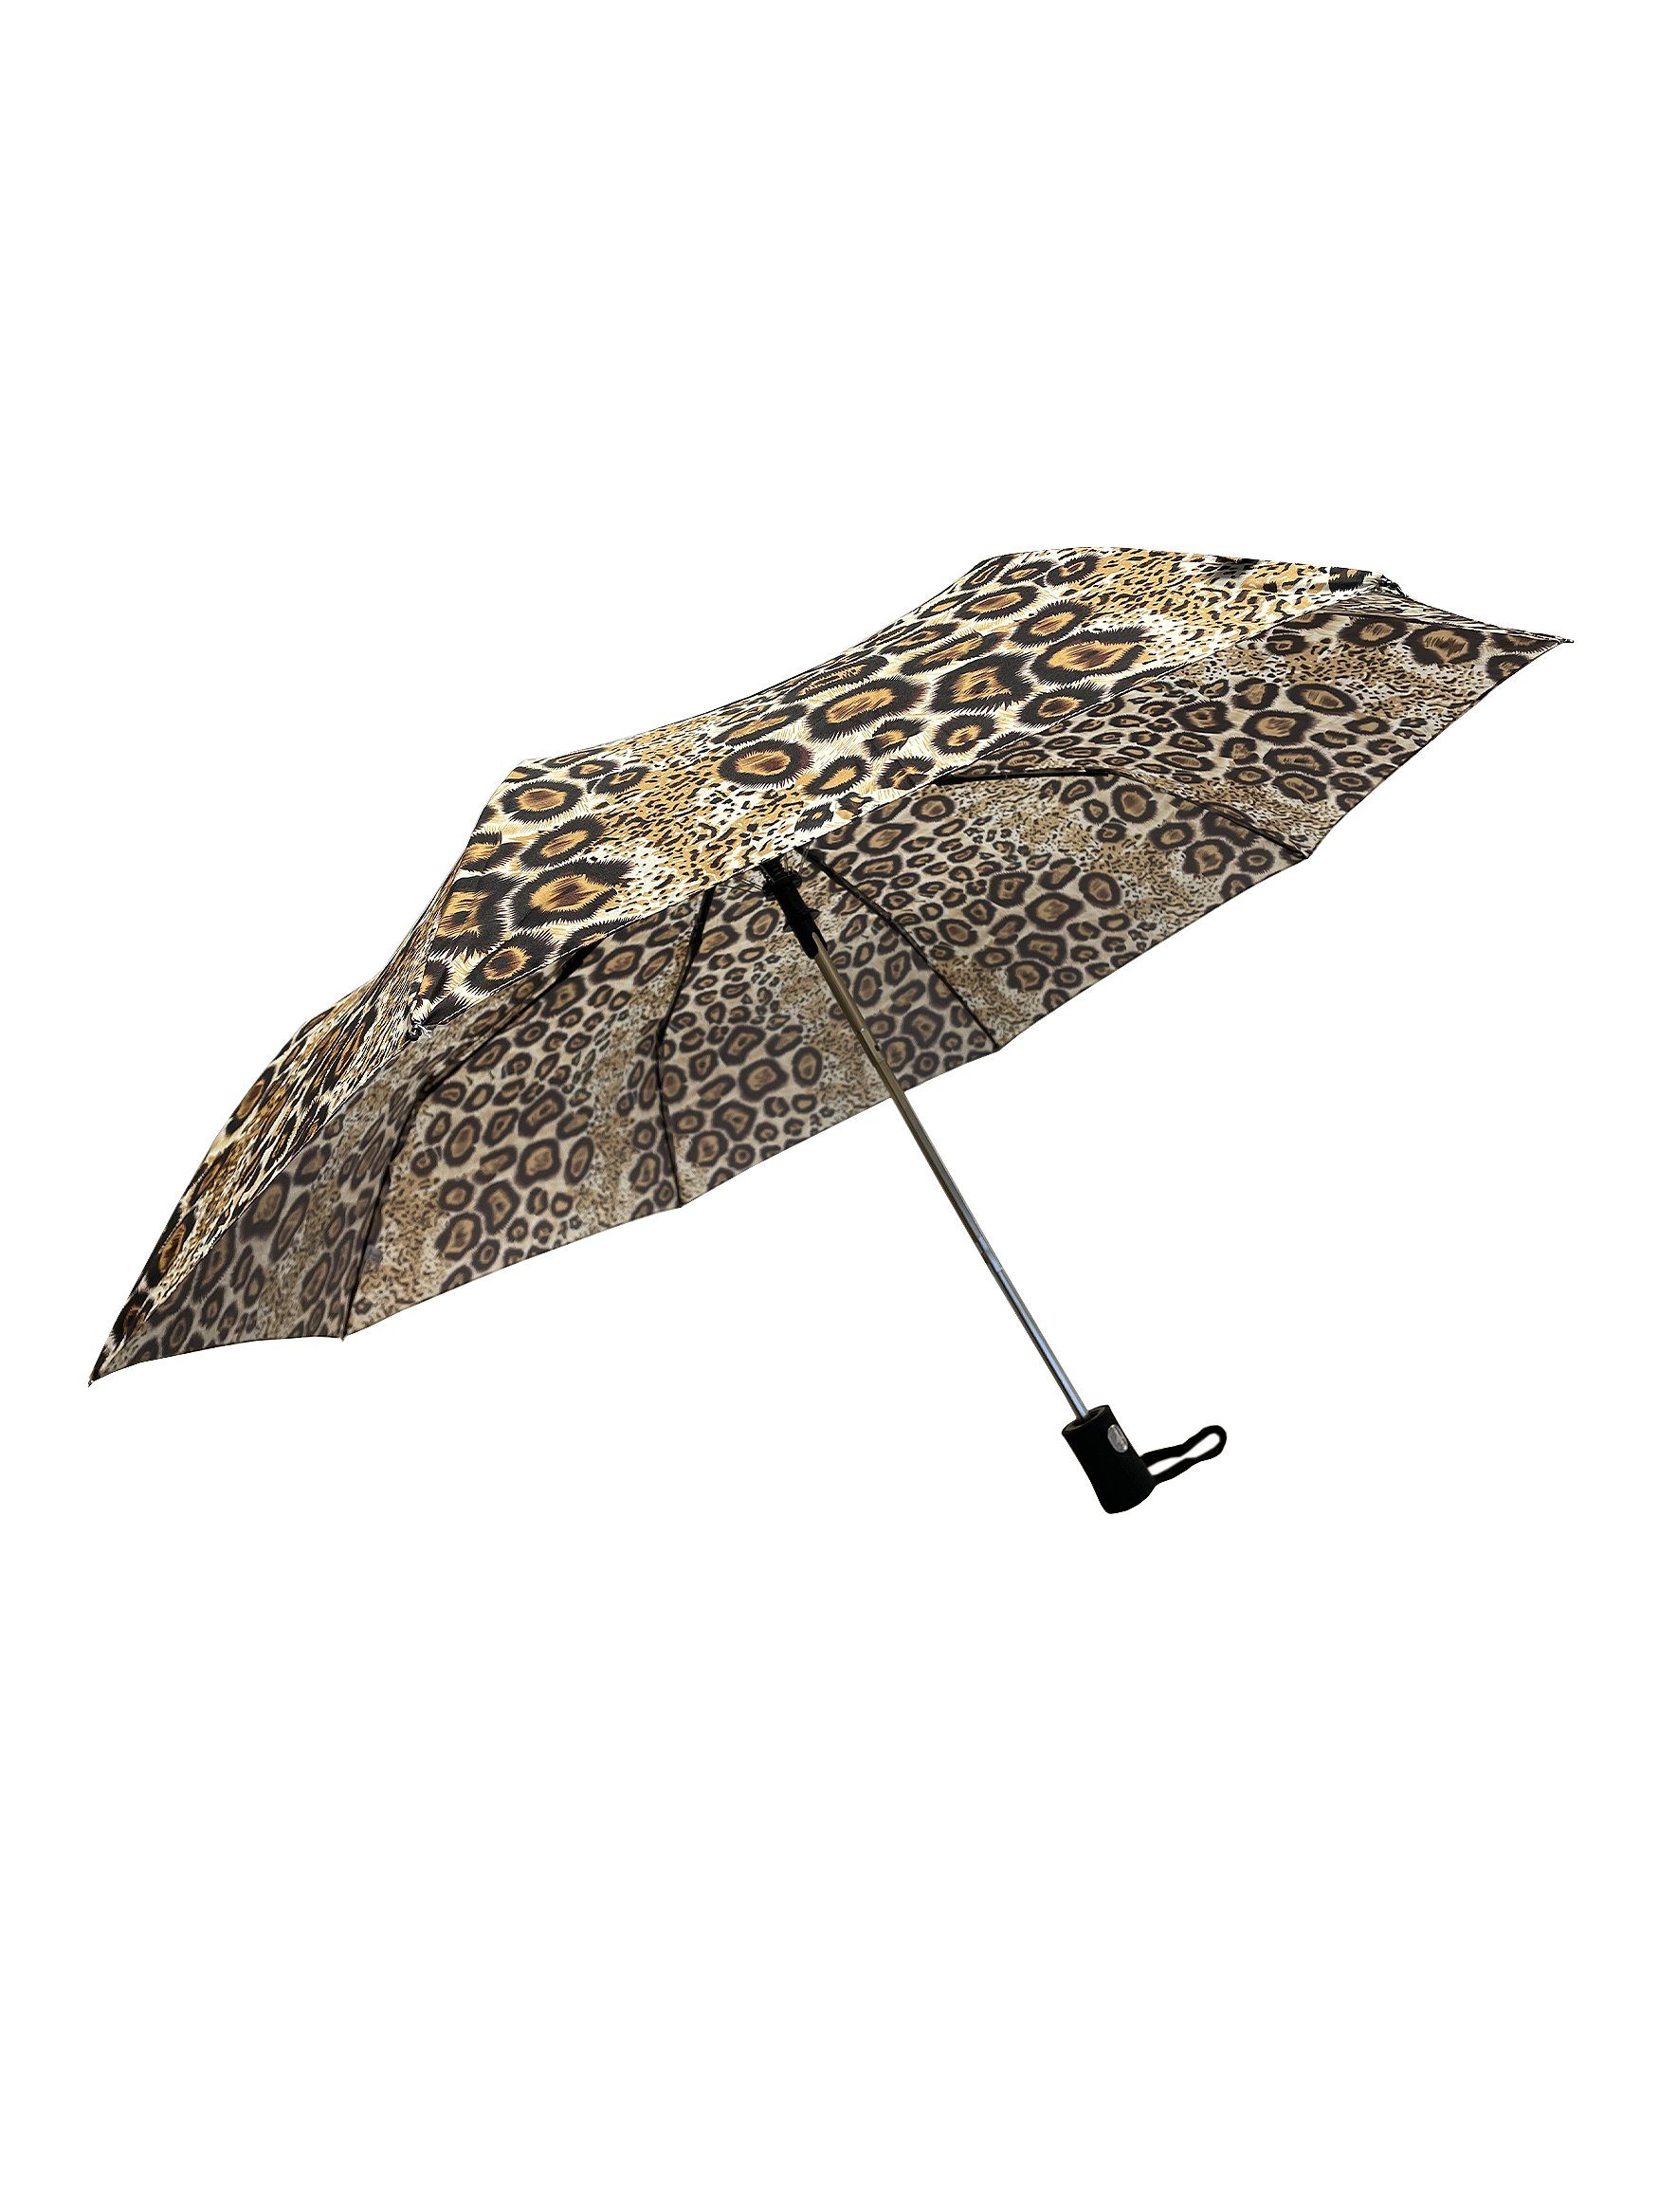 Versand am selben Tag ANELY Taschenregenschirm Regenschirm Braun Muster Automatik Kleiner Taschenschirm, in 6747 Leopard